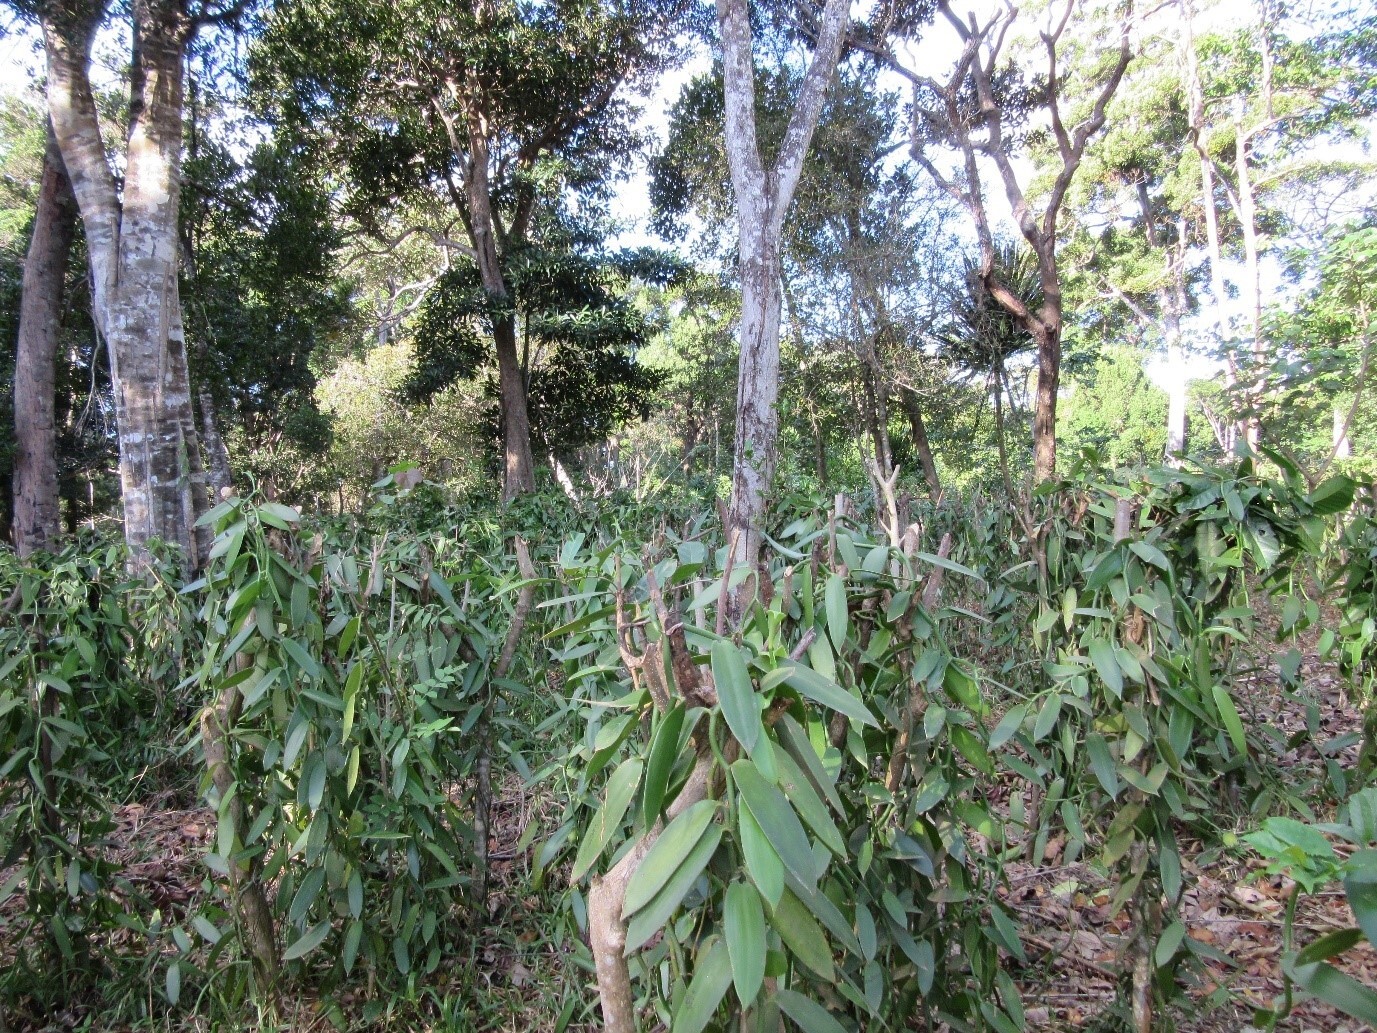 Die Vanilleorchidee wird auf anderen Pflanzen aufgehängt (Vordergrund) und wächst unter den Baumkronen (Hintergrund) dieser ehemaligen Waldfläche. Im Gegensatz zu Vanilleagroforsten, die auf offenem Brachland etabliert werden, führt dieser Anbau zu einem Verlust endemischer Arten und Ökosystemfunktionen.